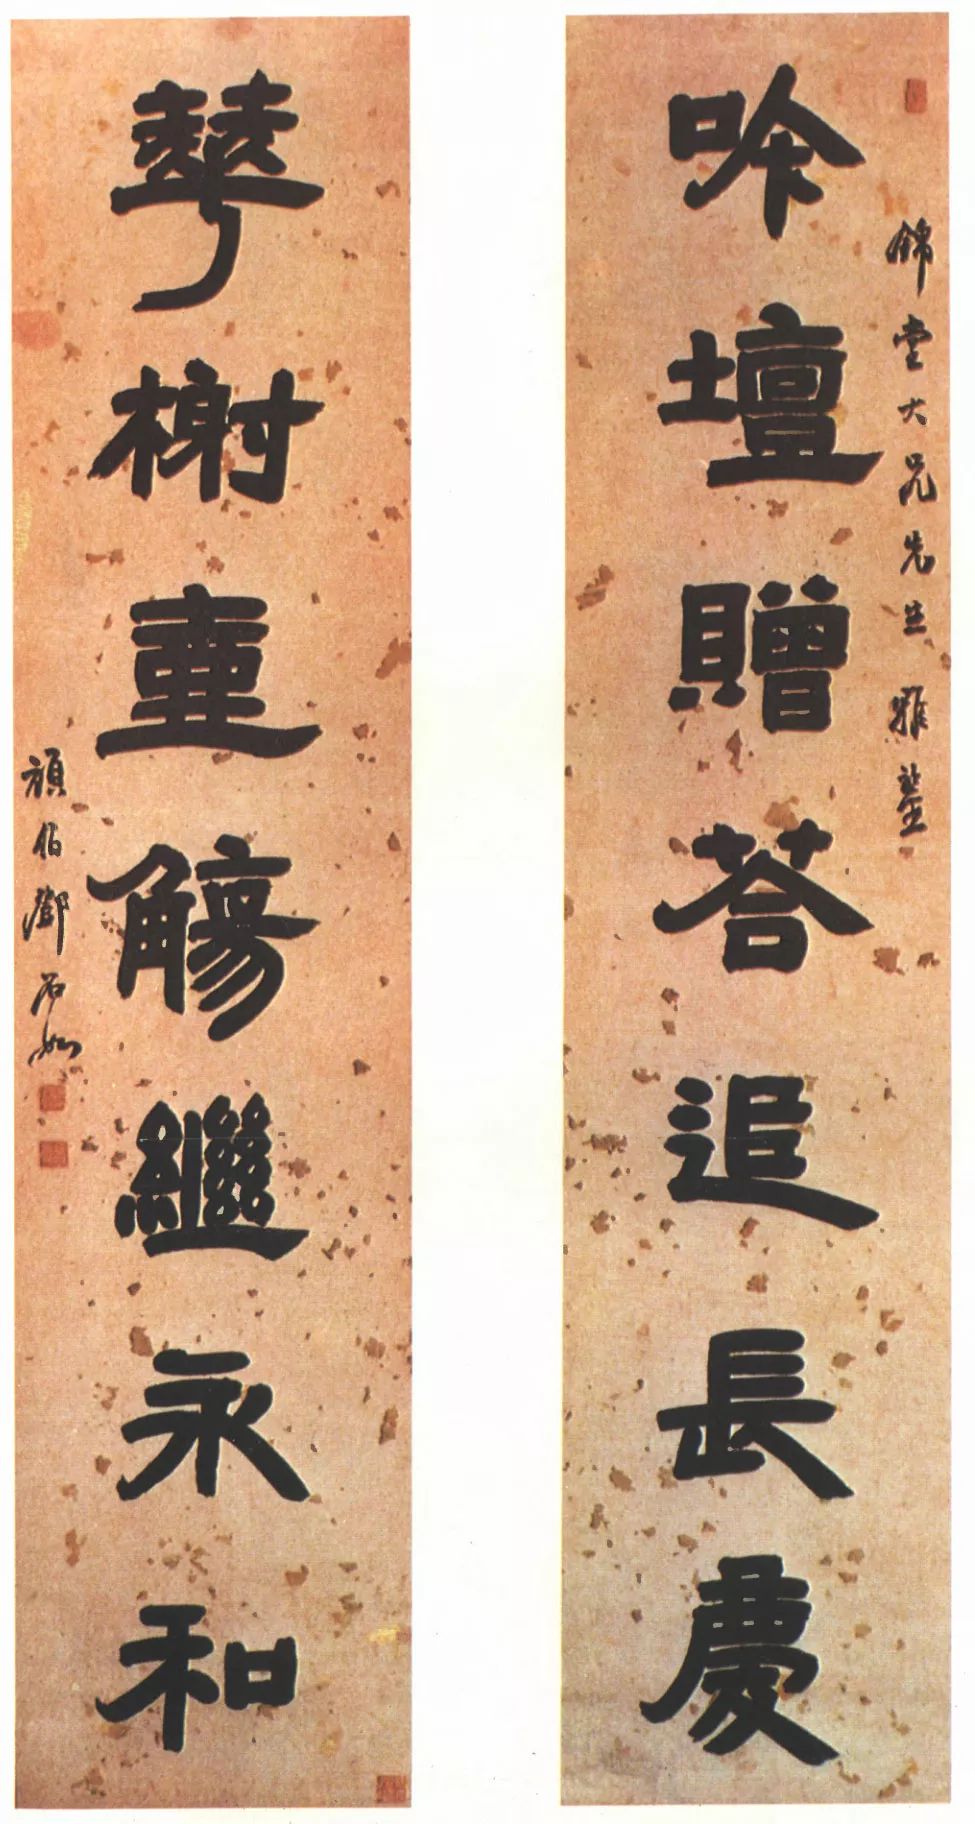 清朝隶书书法家排名图片